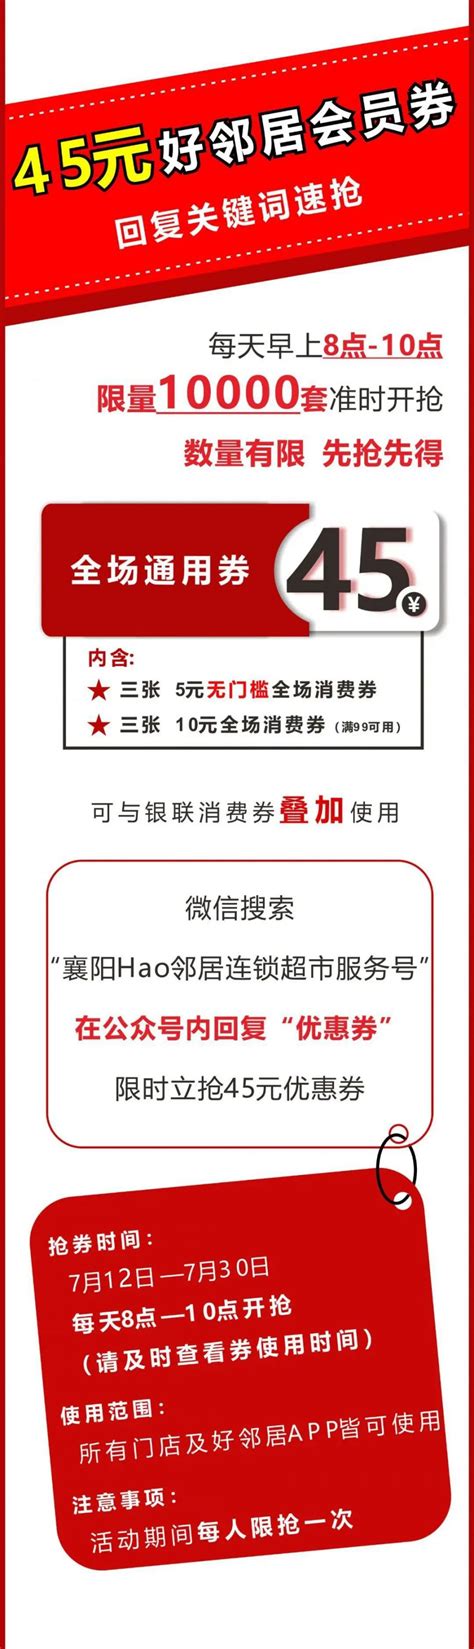 襄阳薤山风景区门票优惠政策2020- 襄阳本地宝